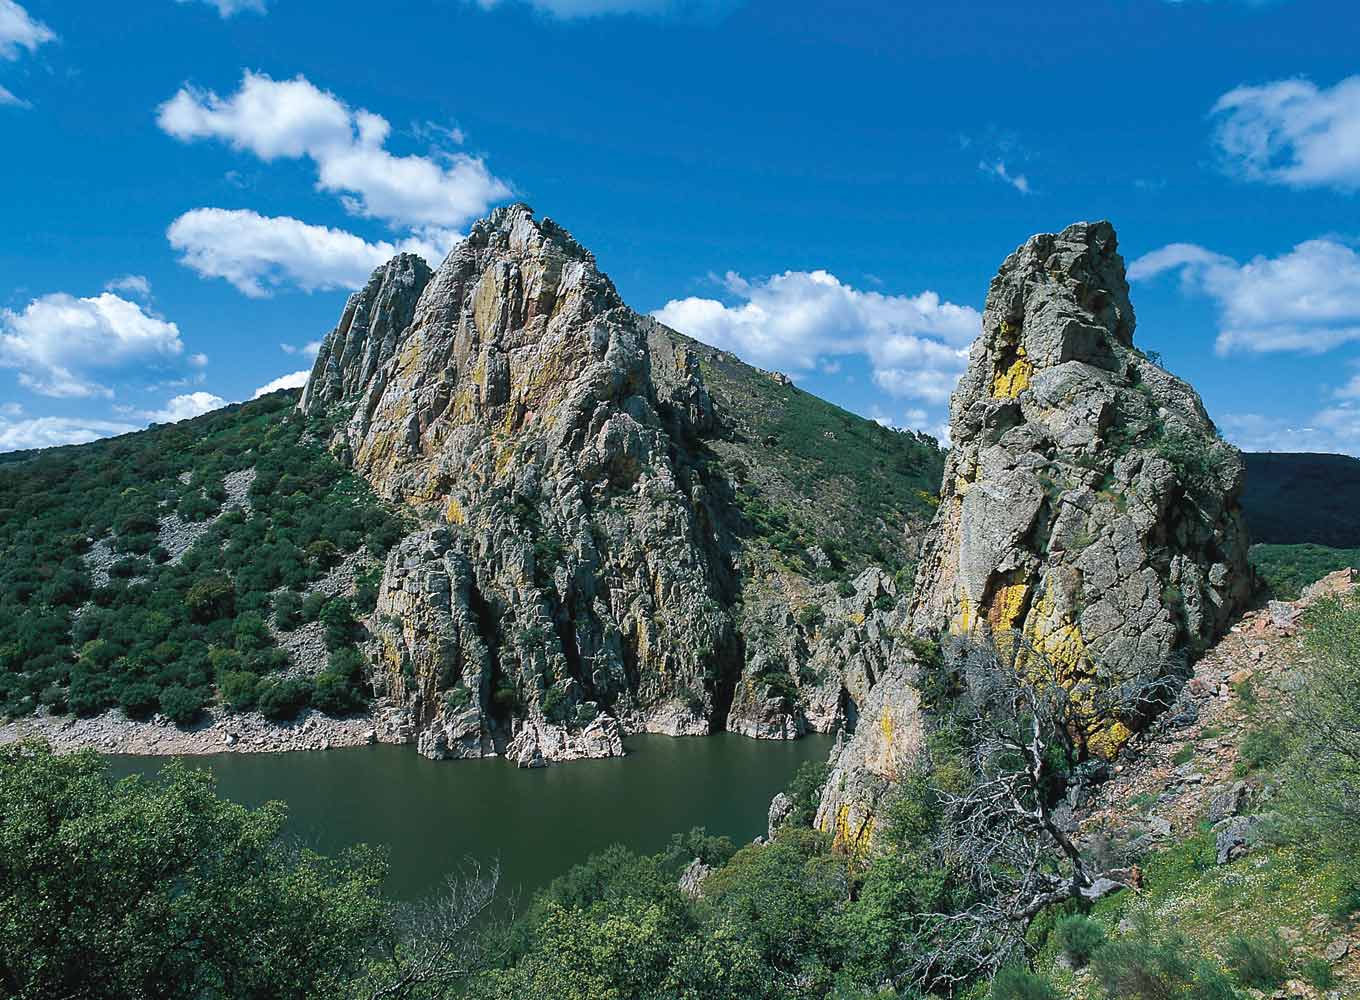 El parque de Monfragüe está en Cáceres, y atraviesan el parque dos ríos, el Tajo y el Tiétar